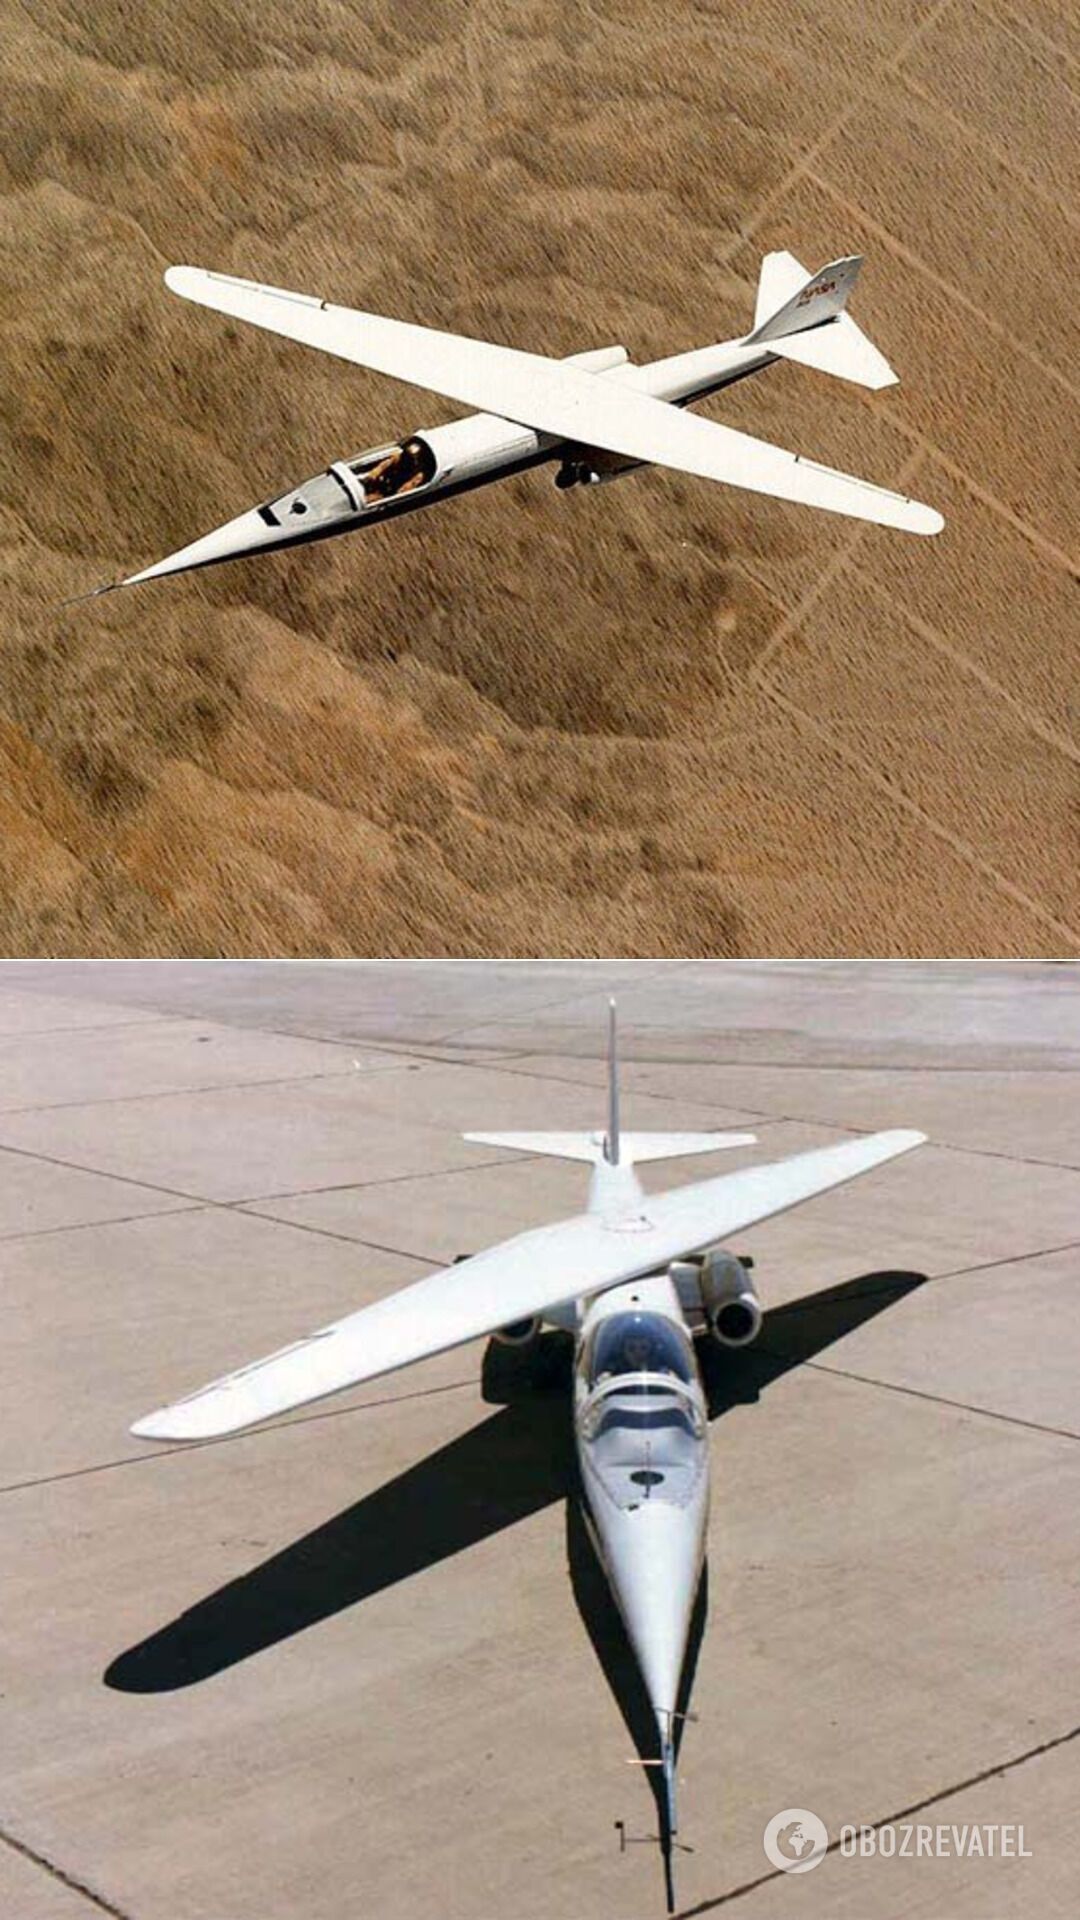 Ames AD-1 ("Эймес АД-1") – экспериментальный и первый в мире самолет с косым крылом. Был построен NASA в 1979 году и совершил первый полет 29 декабря того же года. Испытания проводились до начала 1982 года. За это время AD-1 освоили 17 летчиков. После закрытия программы самолет поместили в музей города Сан-Карлос, где он находится до сих пор